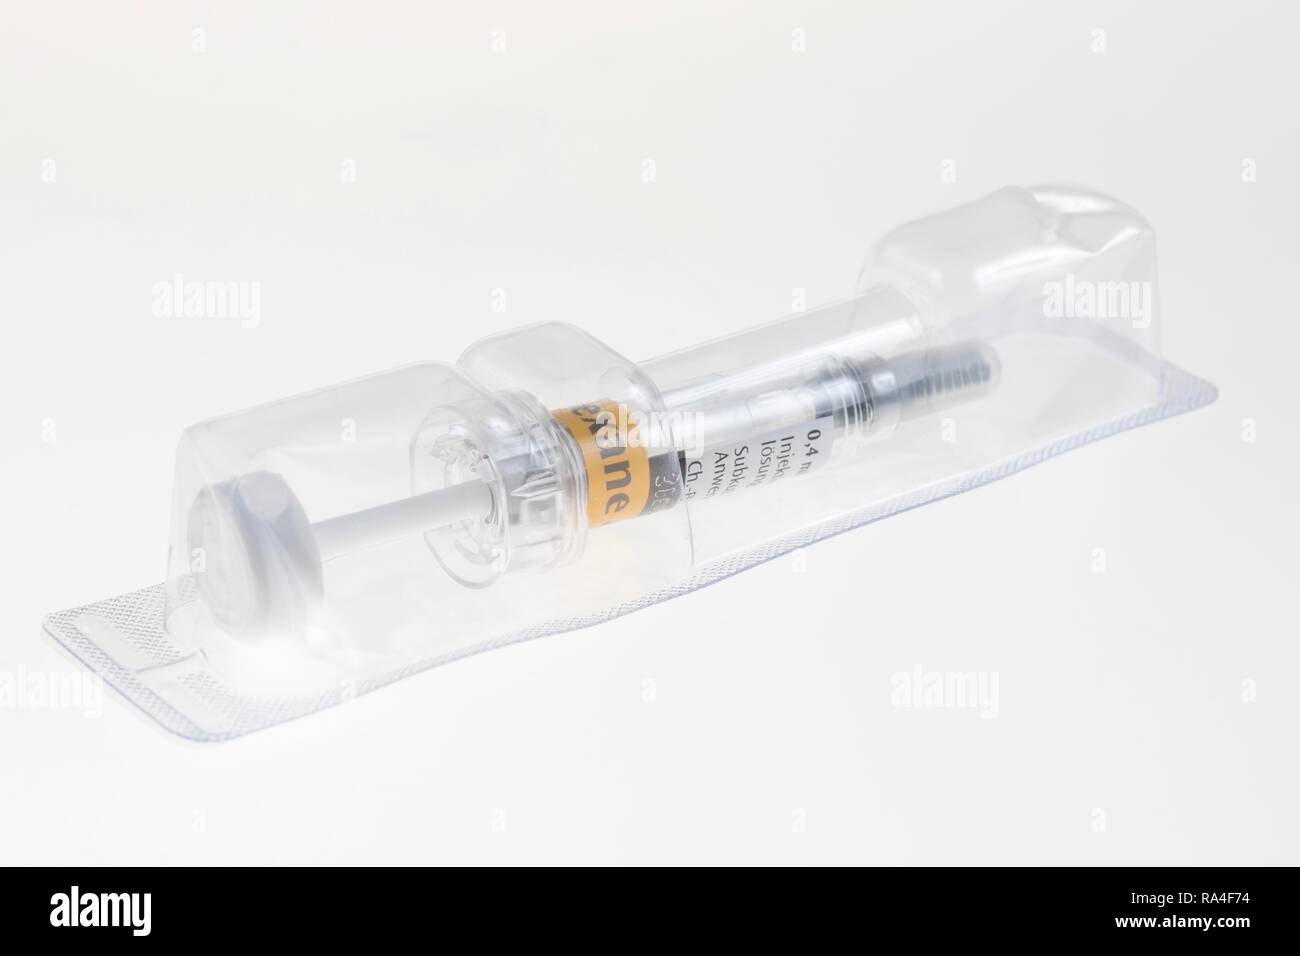 Les dispositifs médicaux à usage unique stériles, seringue, paniers, avec ingrédient actif, vaccin, médicament Banque D'Images